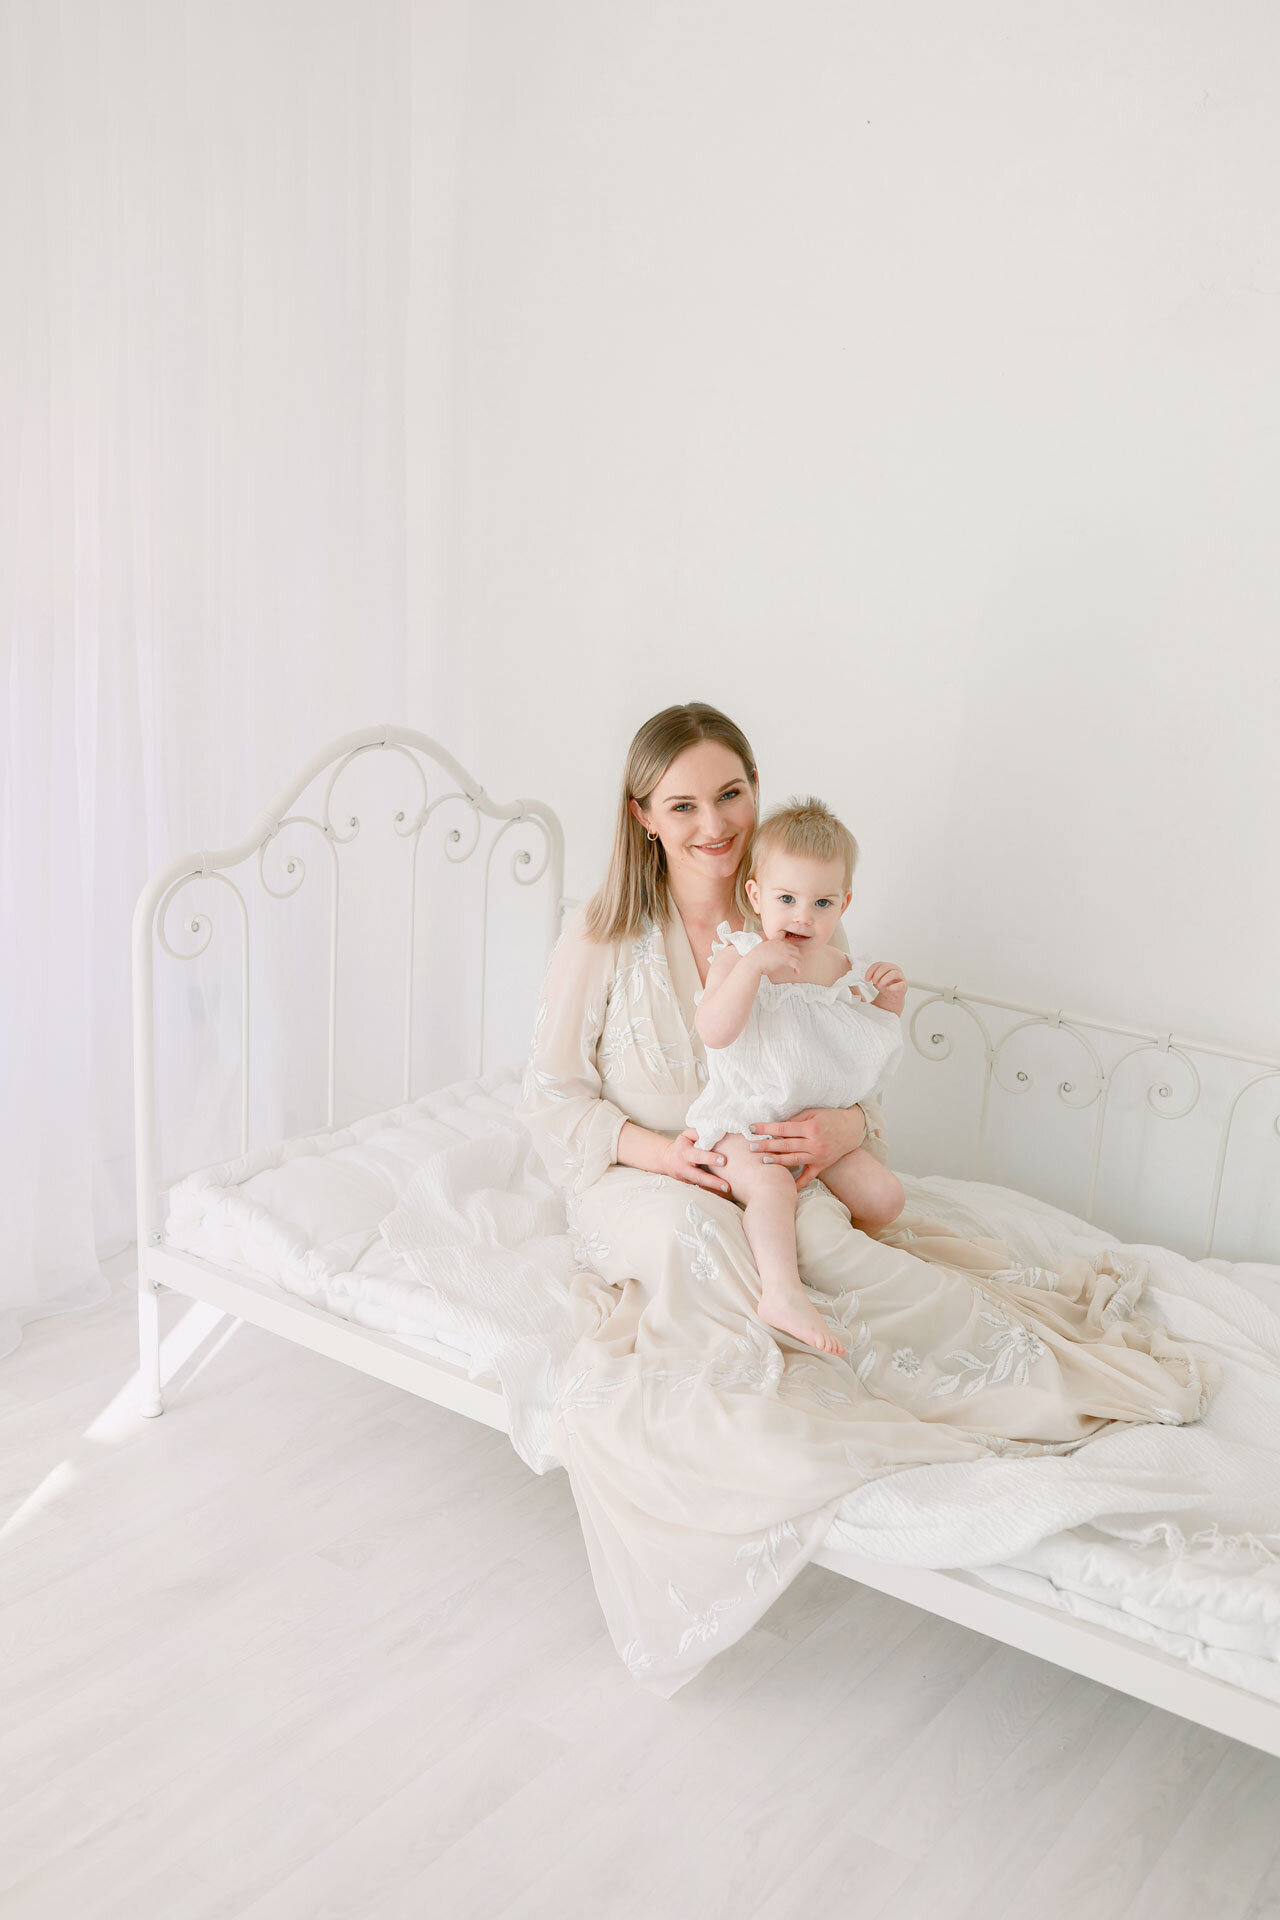 Babyshooting bei Babyfotografin im Fotostudio Bielefeld. Auf weißem Bett sitzt eine glückliche Mama in langem weißen Kleid mit Baby auf dem Schoß.